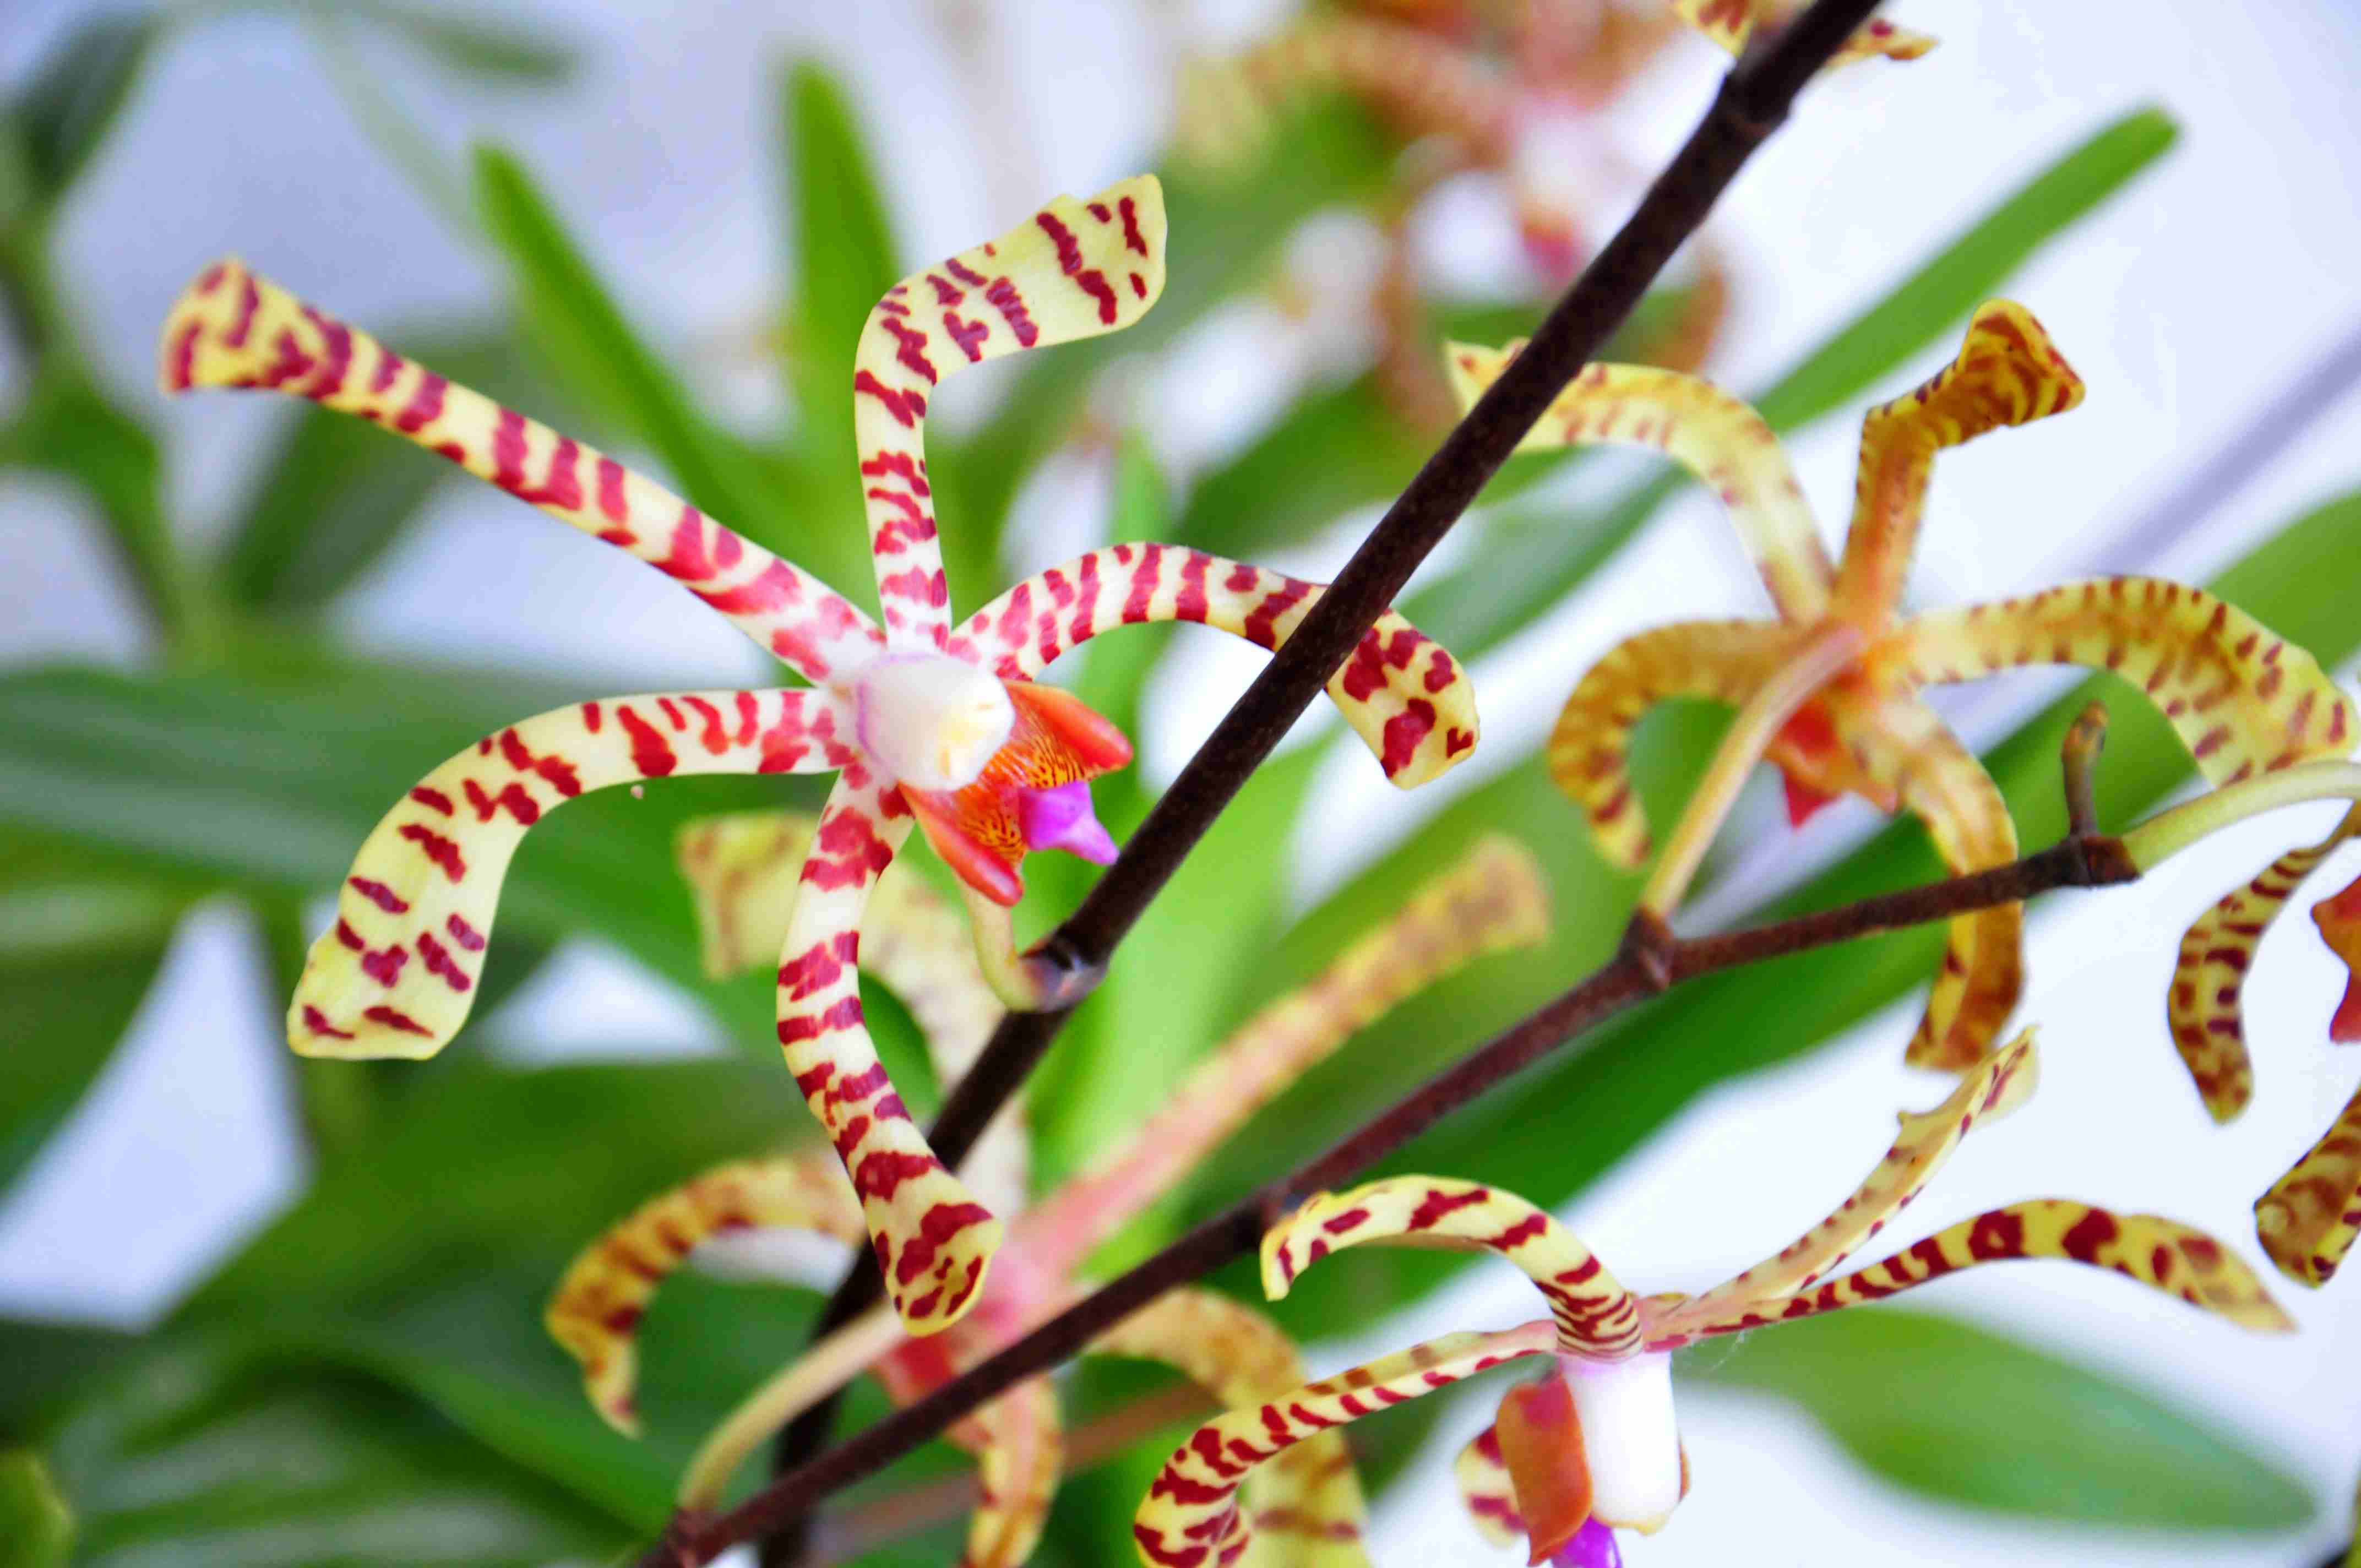 39ª Exposição de Orquídeas acontece no feriado prolongado em Caraguatatuba